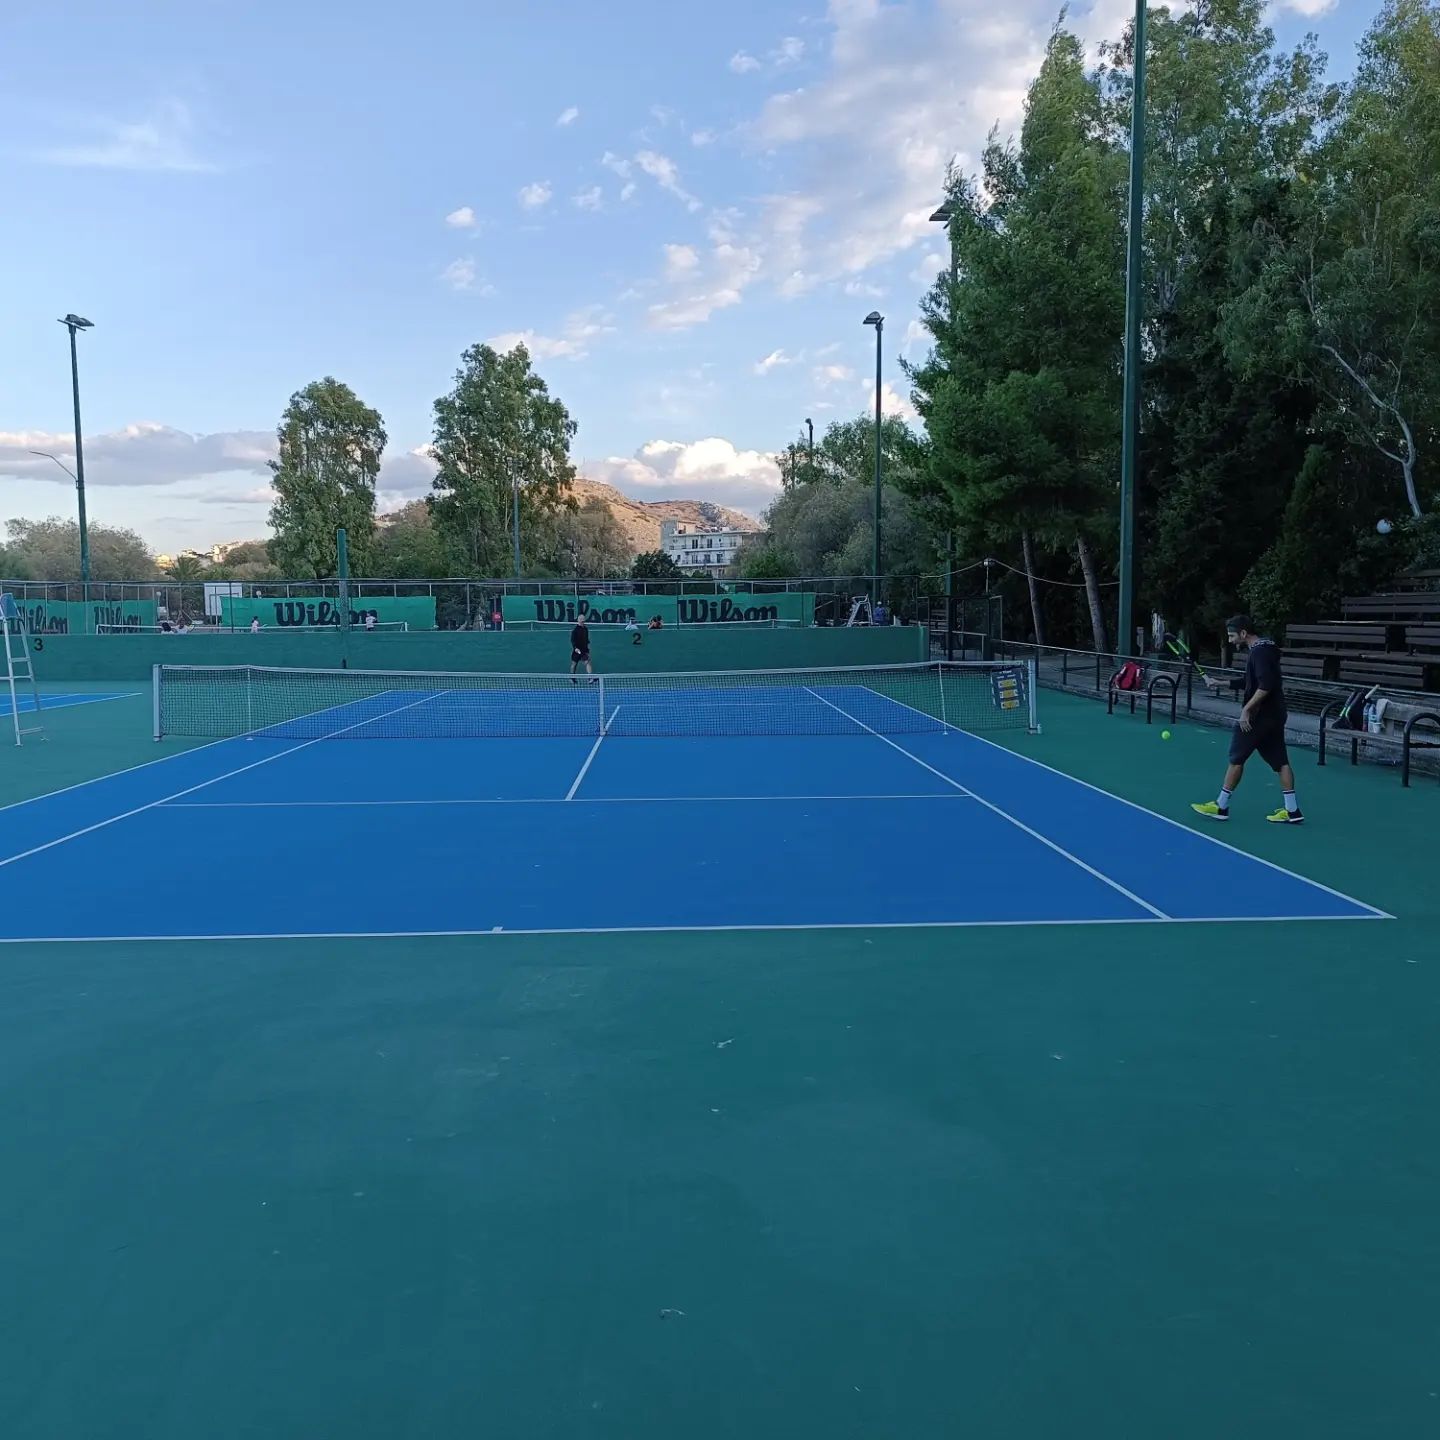 Εύβοια – Χαλκίδα: Ξεκίνησε το Πρωτάθλημα Τένις Chalkida Open 2022 στη Λιανή Άμμο